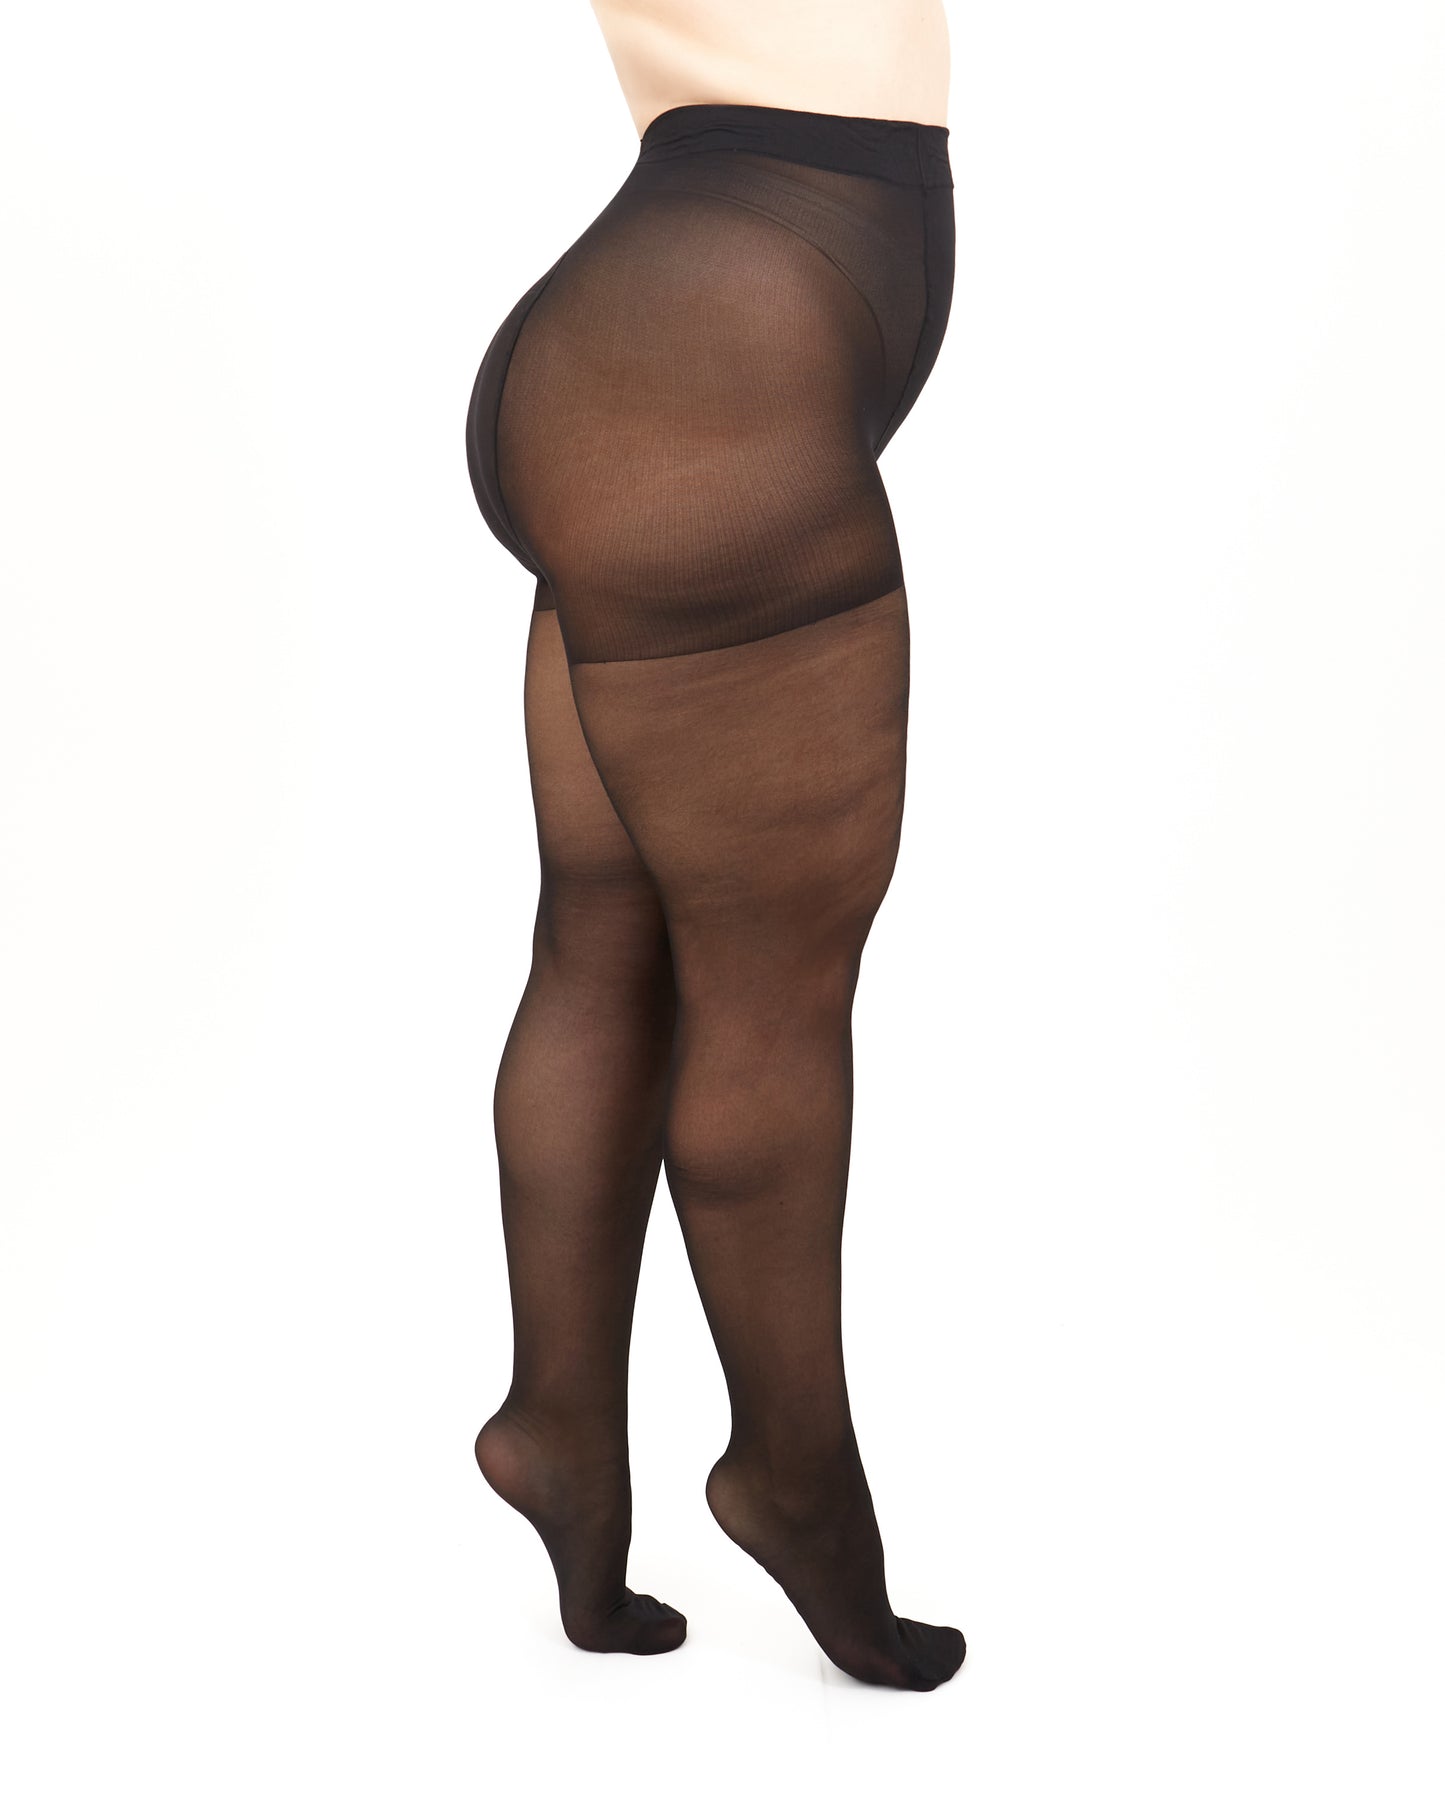 Giulia - Molly 40den (enkel grote maten) Panty speciaal voor dames met kortere benen (multipack) - 2 kleuren